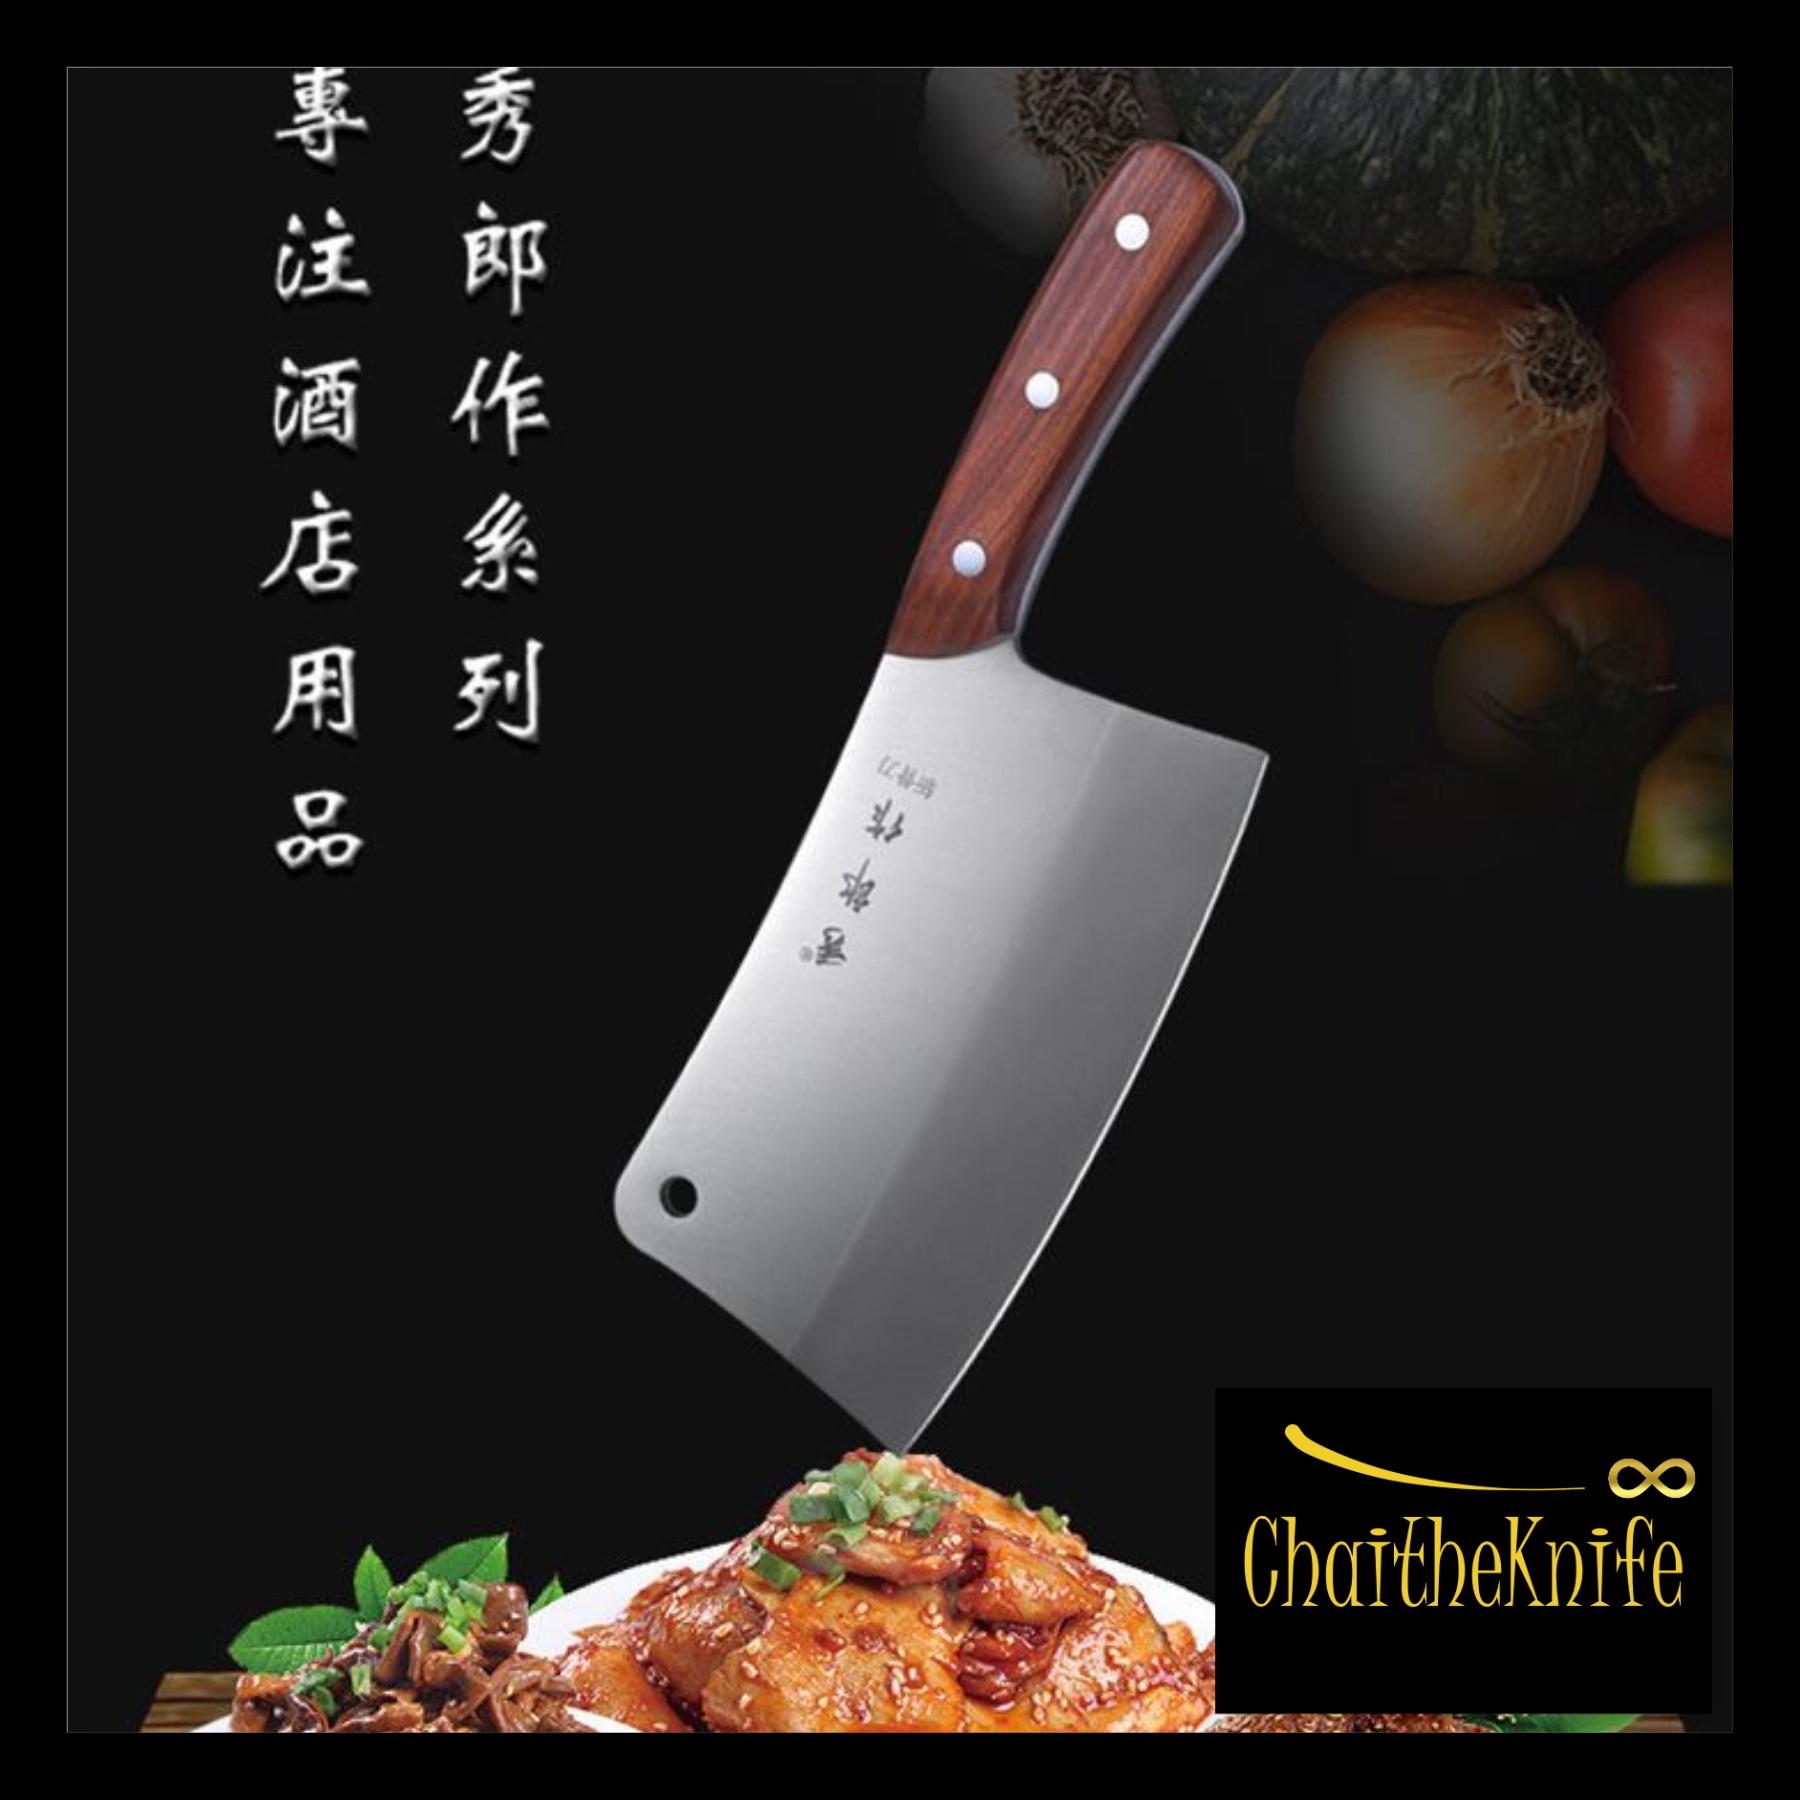 มีดเชฟ มีดปังตอ สับกระดูก ใบมีดยาว 19.5 cm  ด้ามจับไม้ น้ำหนักดี พร้อมส่ง Multipurpose chef knife 19.5 cm blade long wooden handle Ready to ship out from Thailand